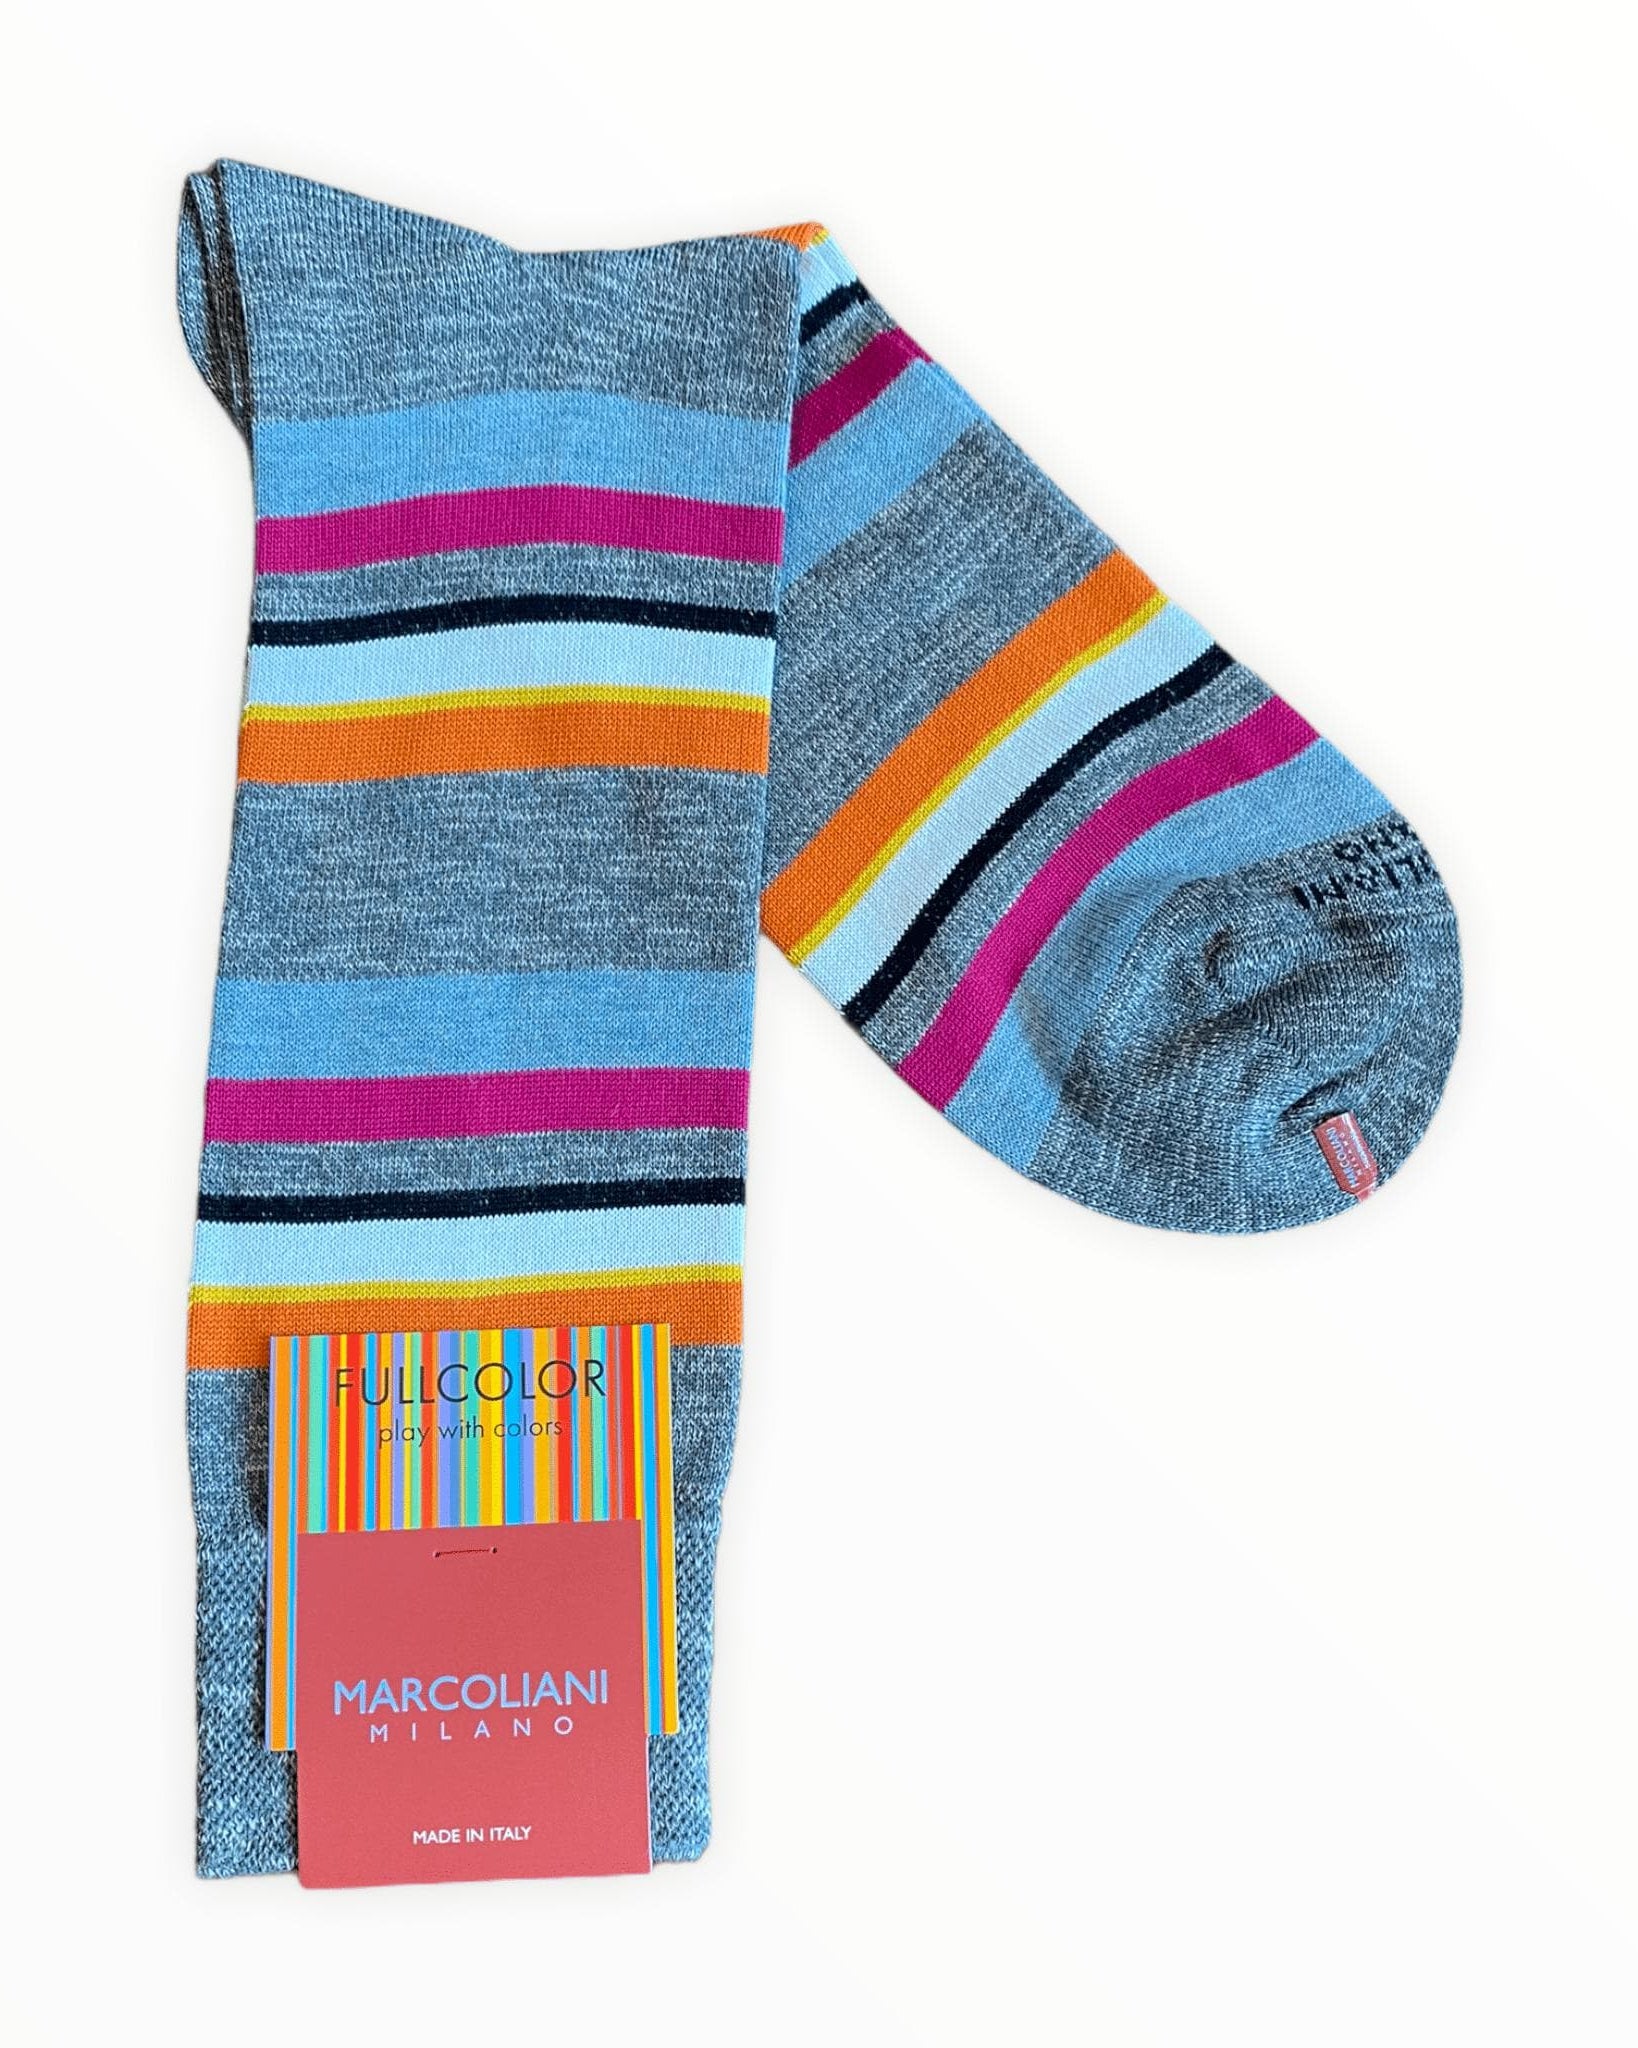 Marcoliani Men's Socks Flannel Grey Pima Cotton Eclectic Stripe